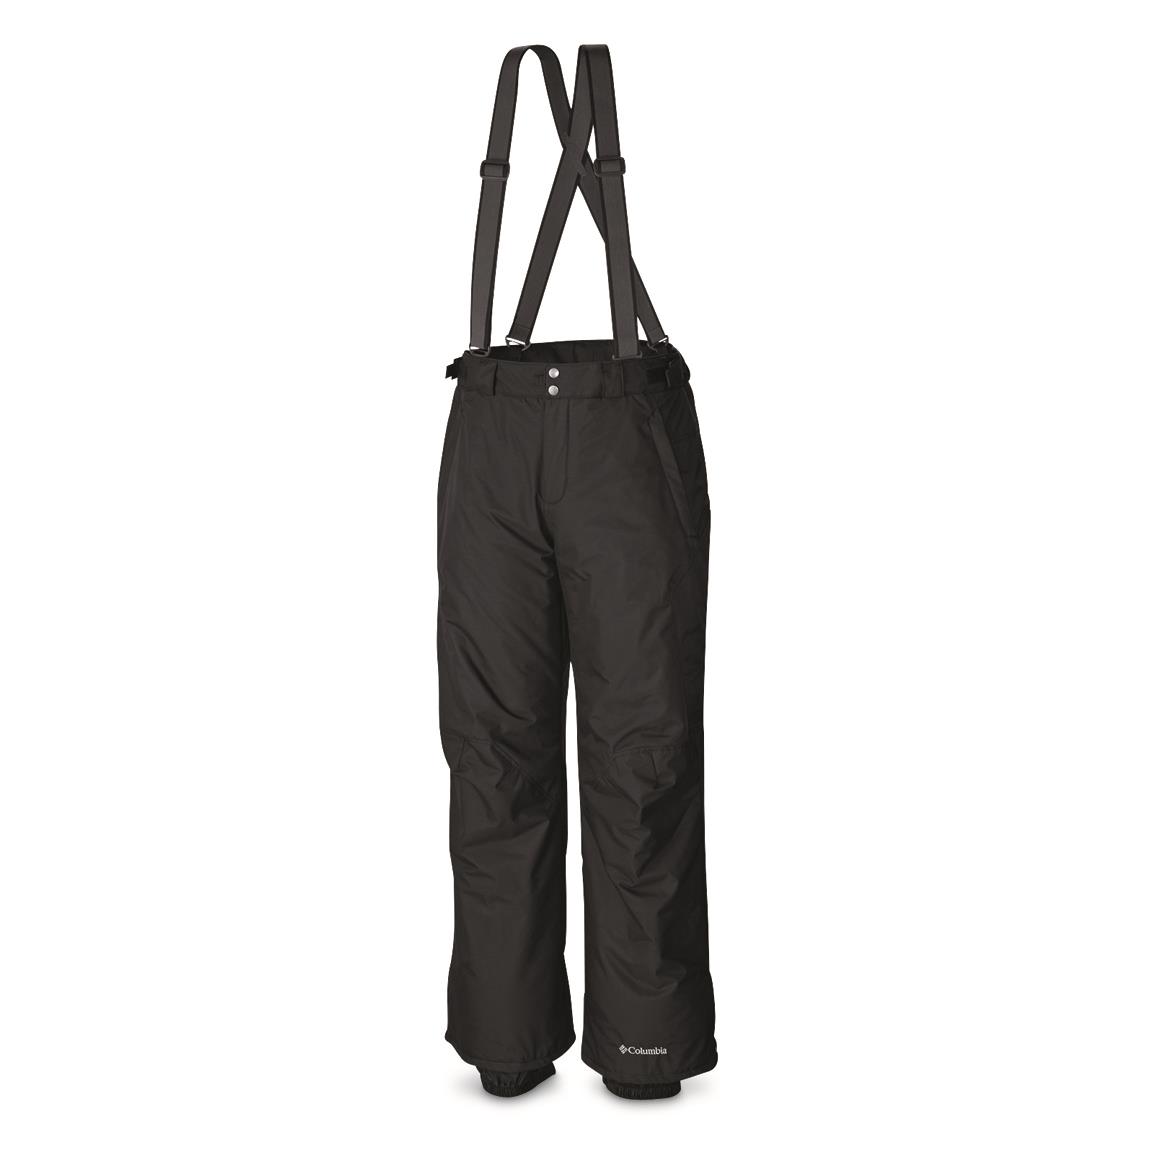 Columbia Men's Bugaboo Waterproof Omni-Heat Suspender Bibs, Black